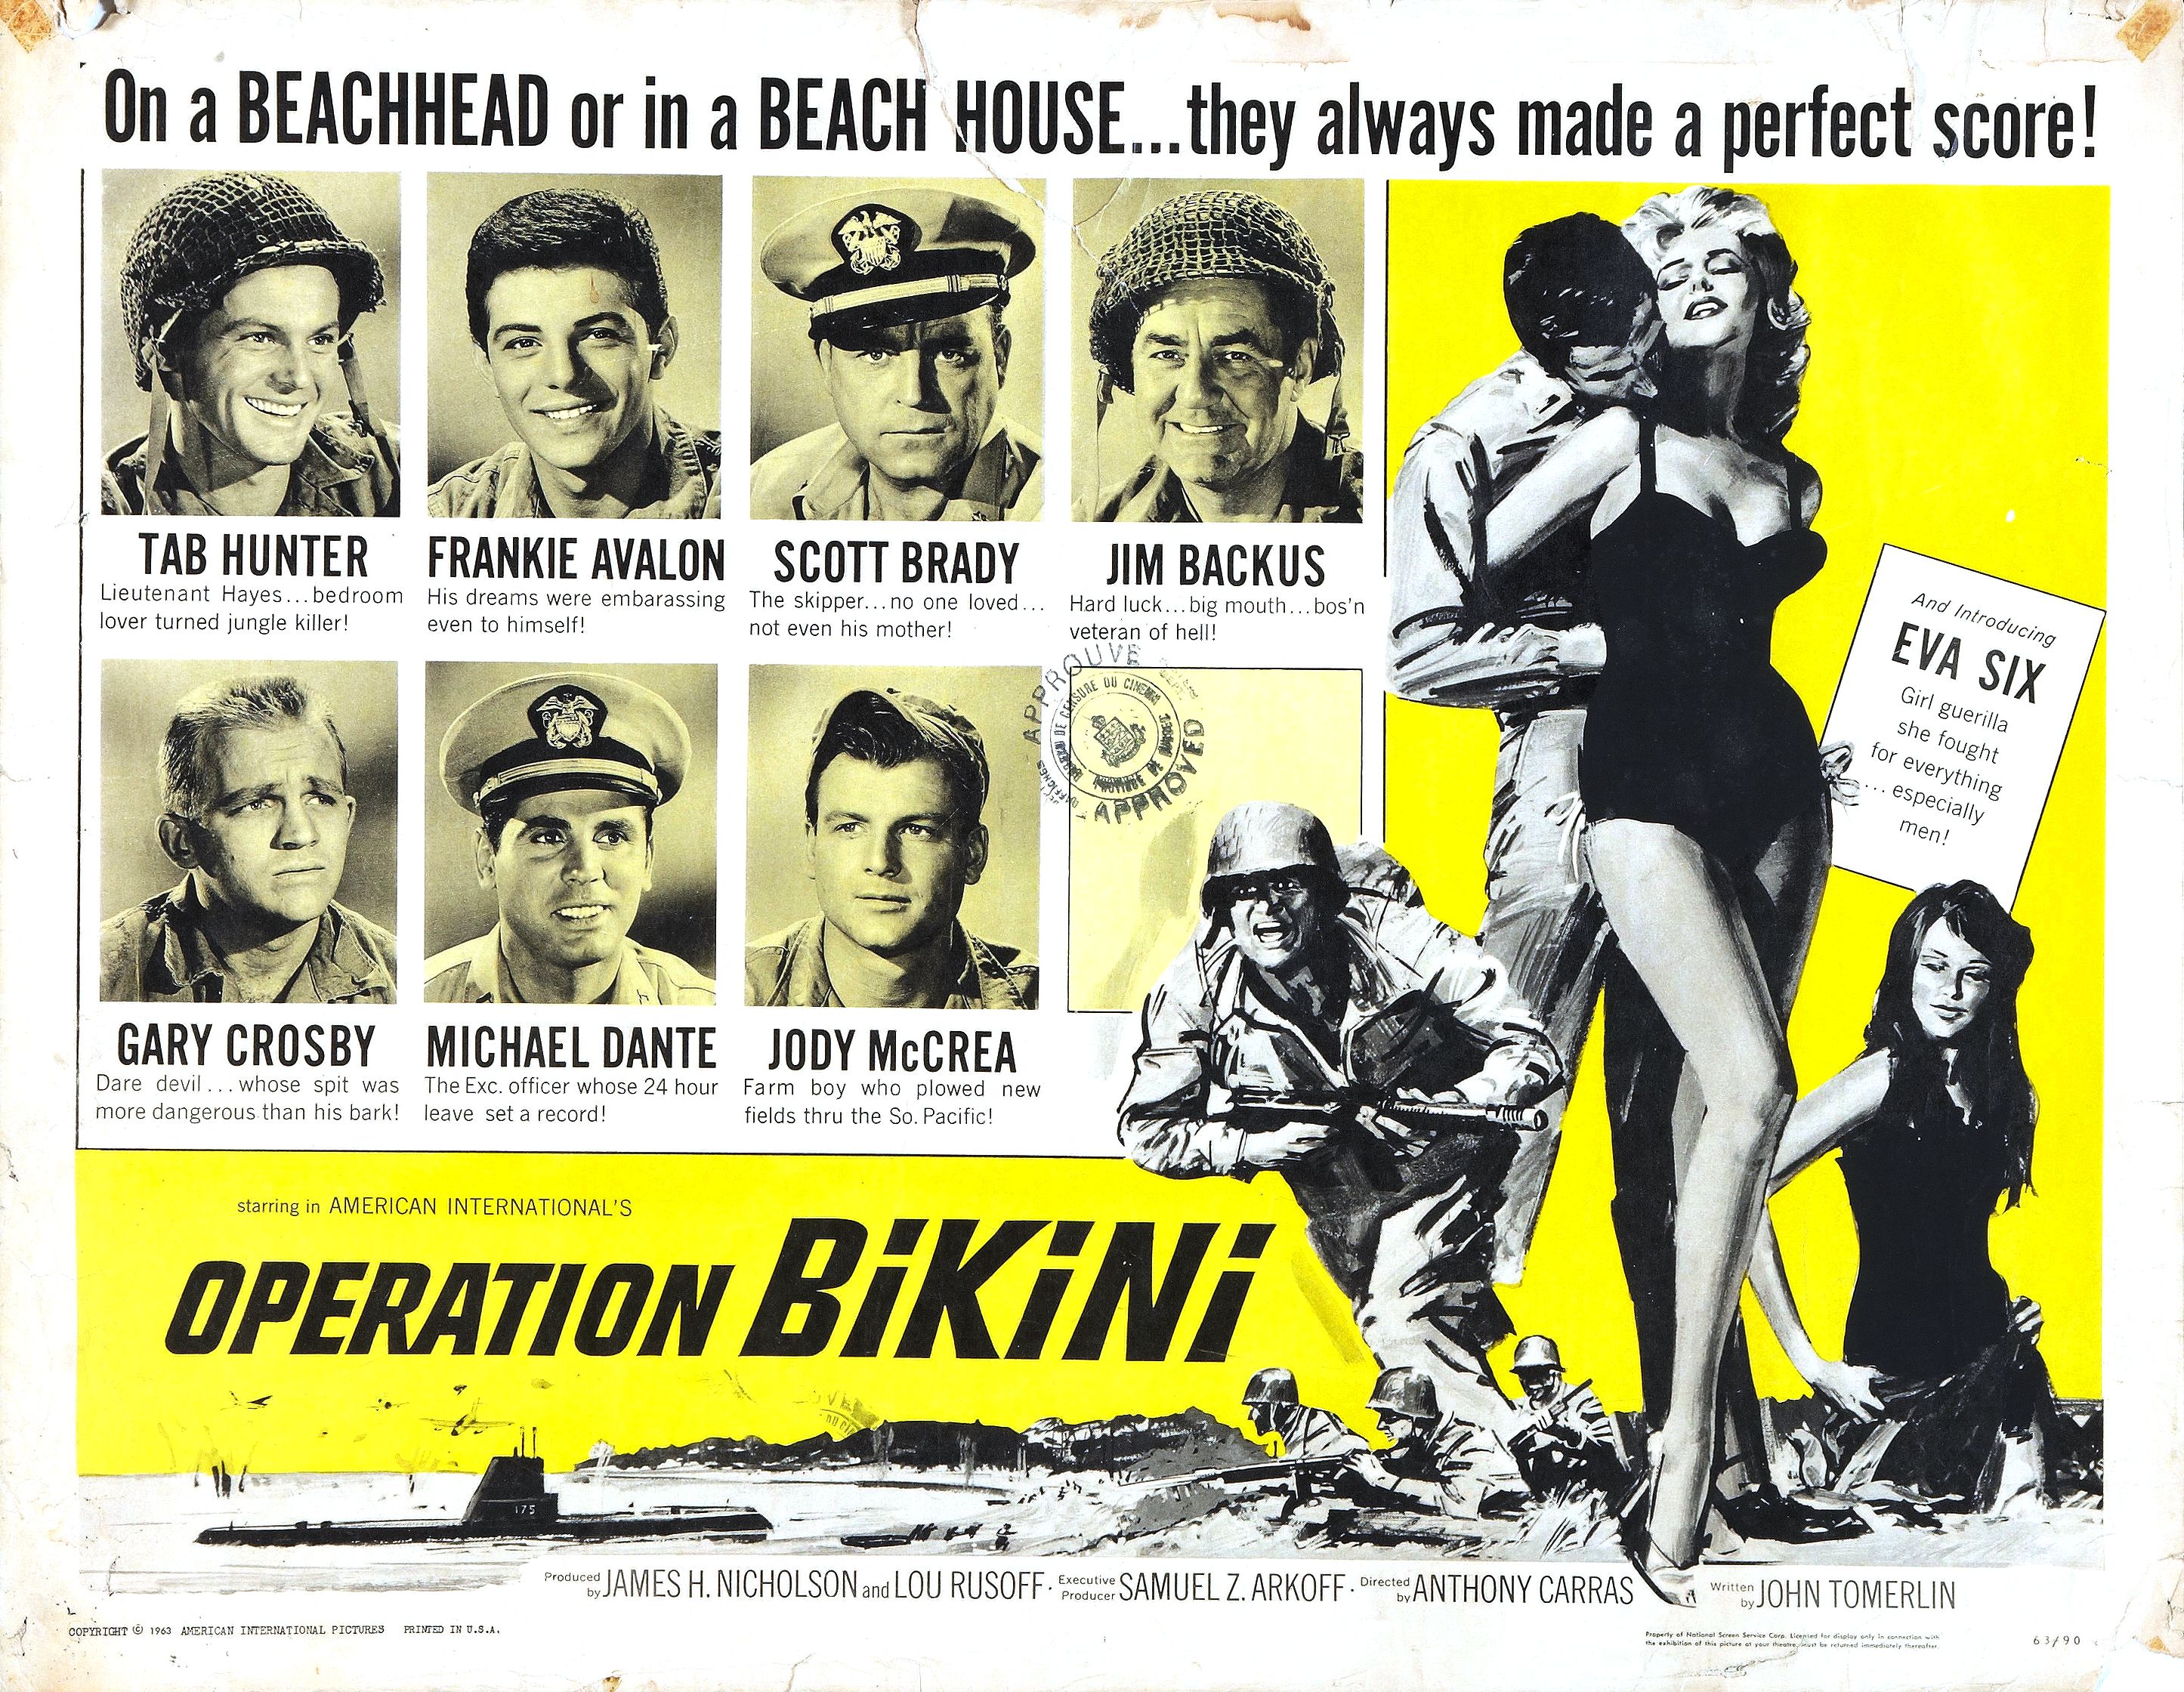 Operation Bikini (1963)